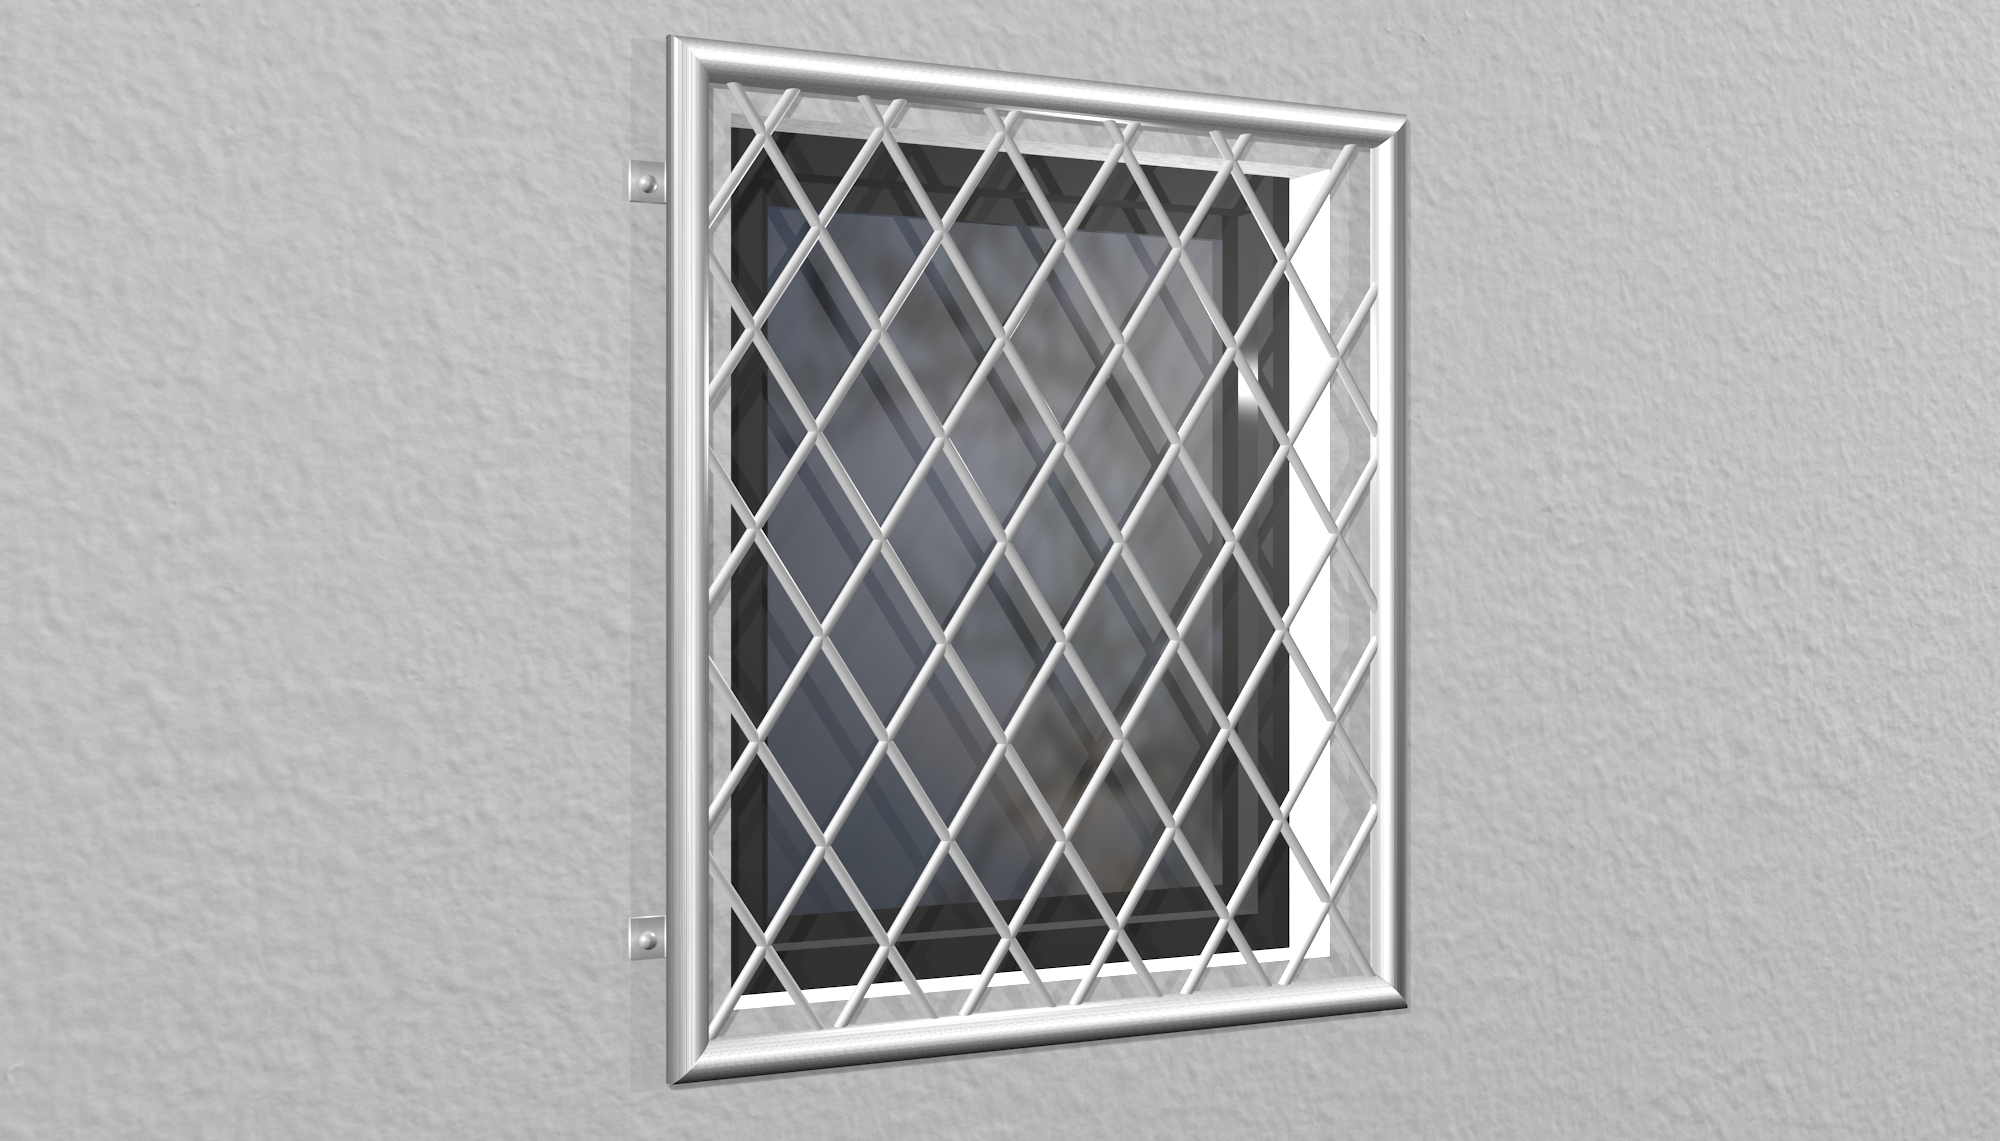 Grille de défense pour fenêtres en acier inoxydable barre ronde en forme de losange